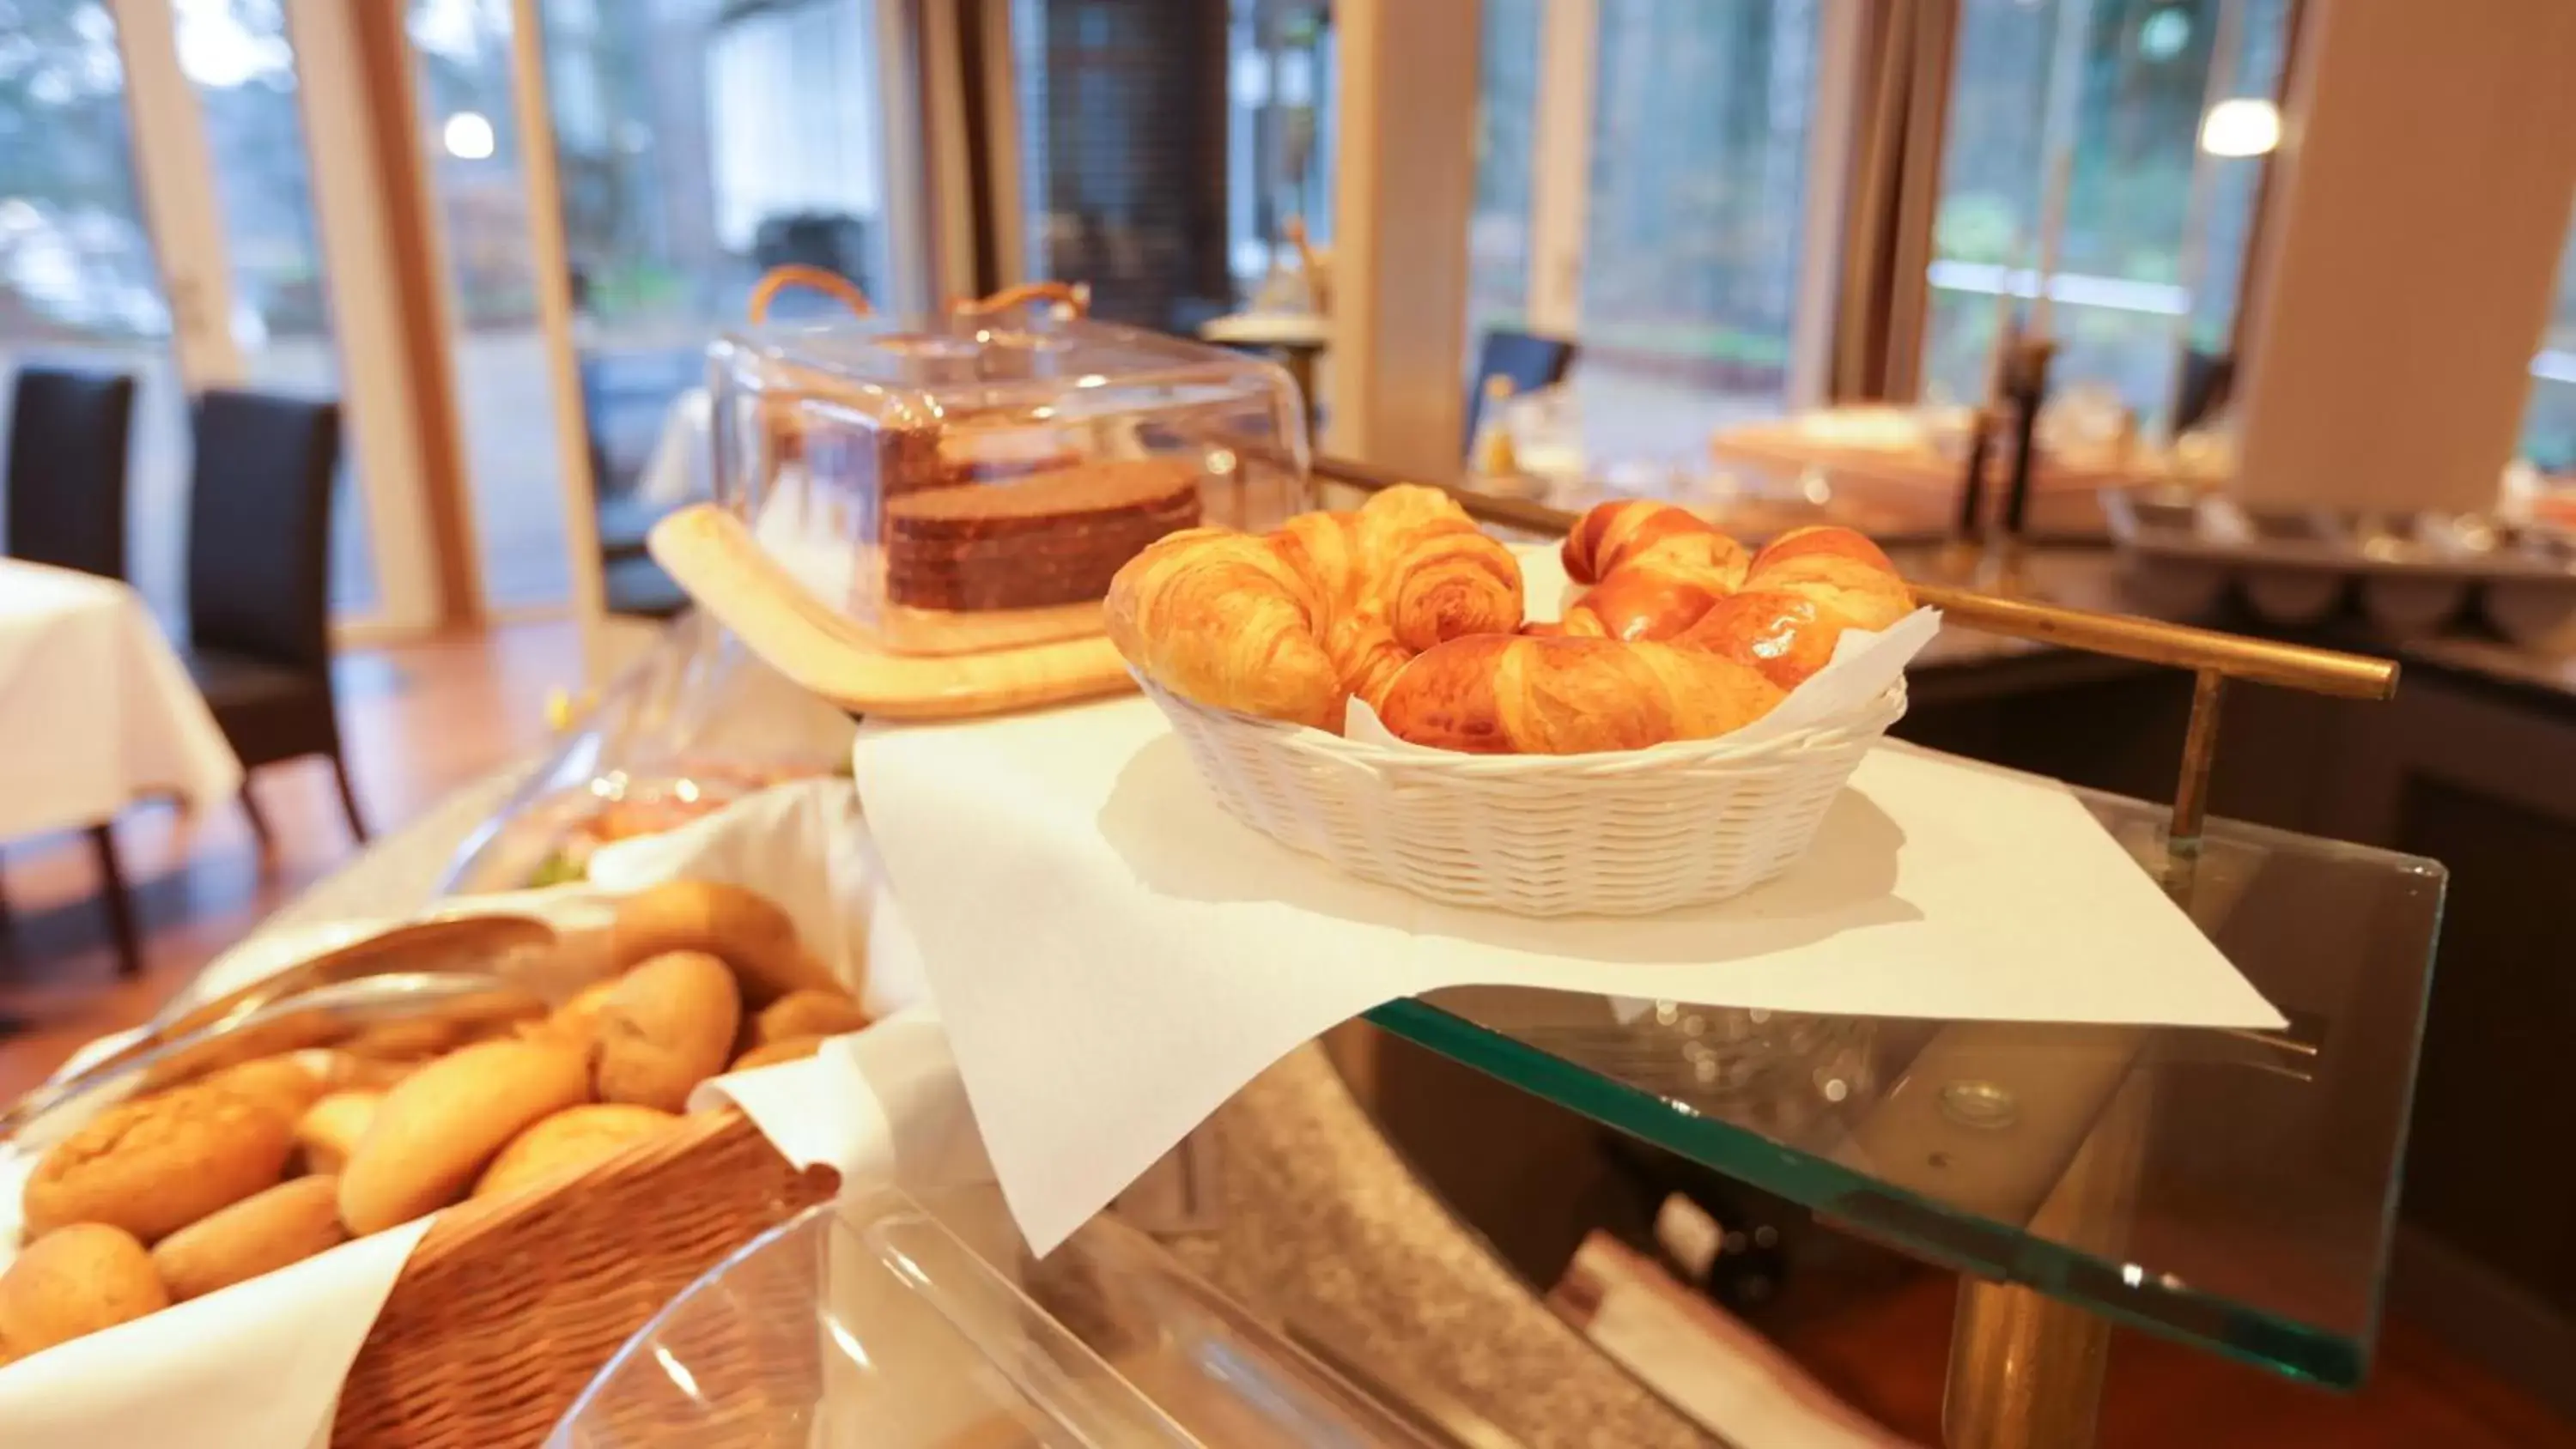 Buffet breakfast in Hotel Waldhalle